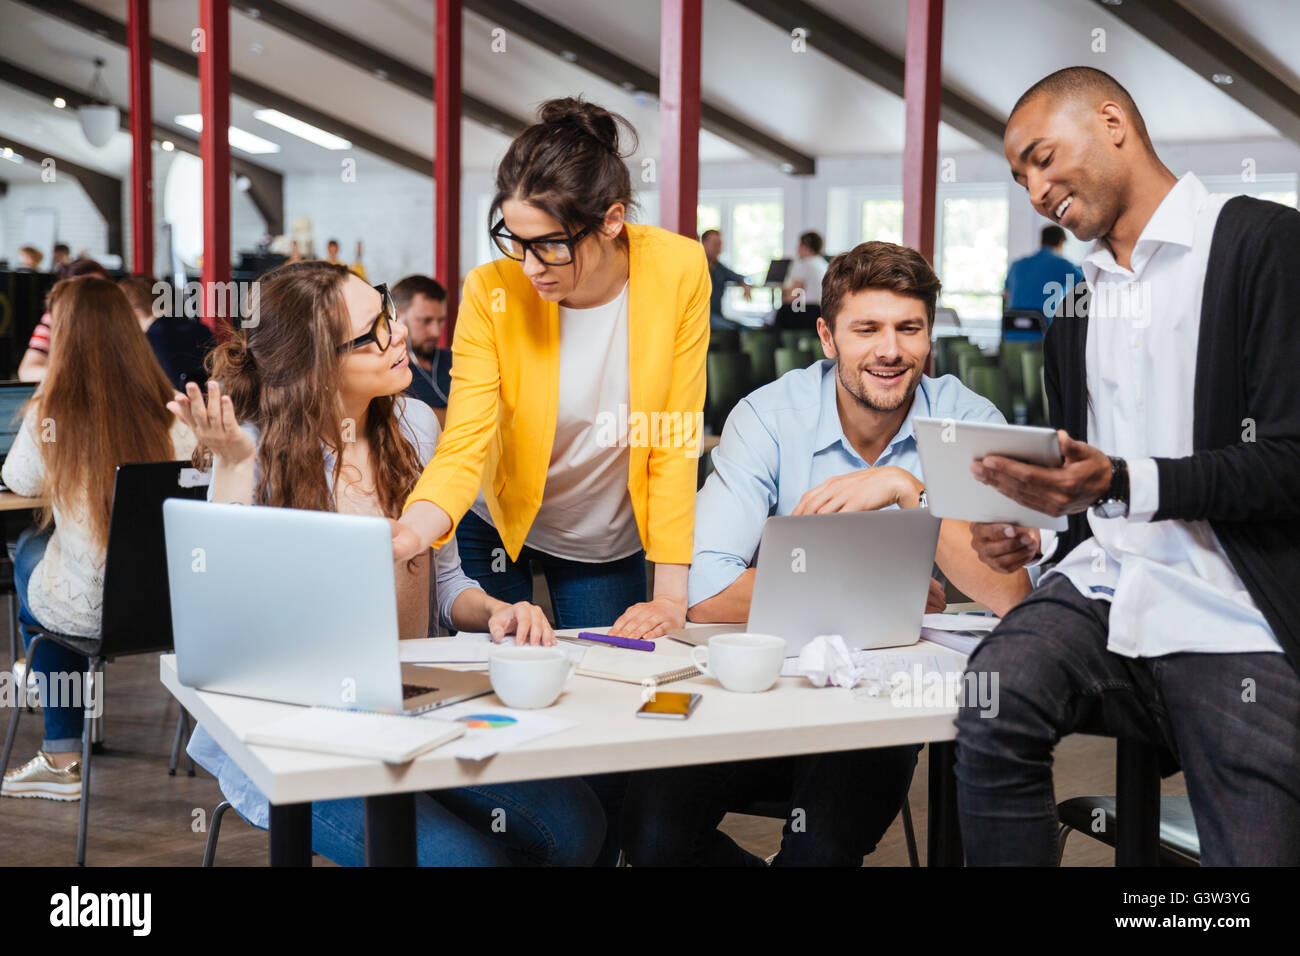 Gruppe des Lächelns inspiriert junge Geschäftsleute arbeiten zusammen im Büro Stockfoto